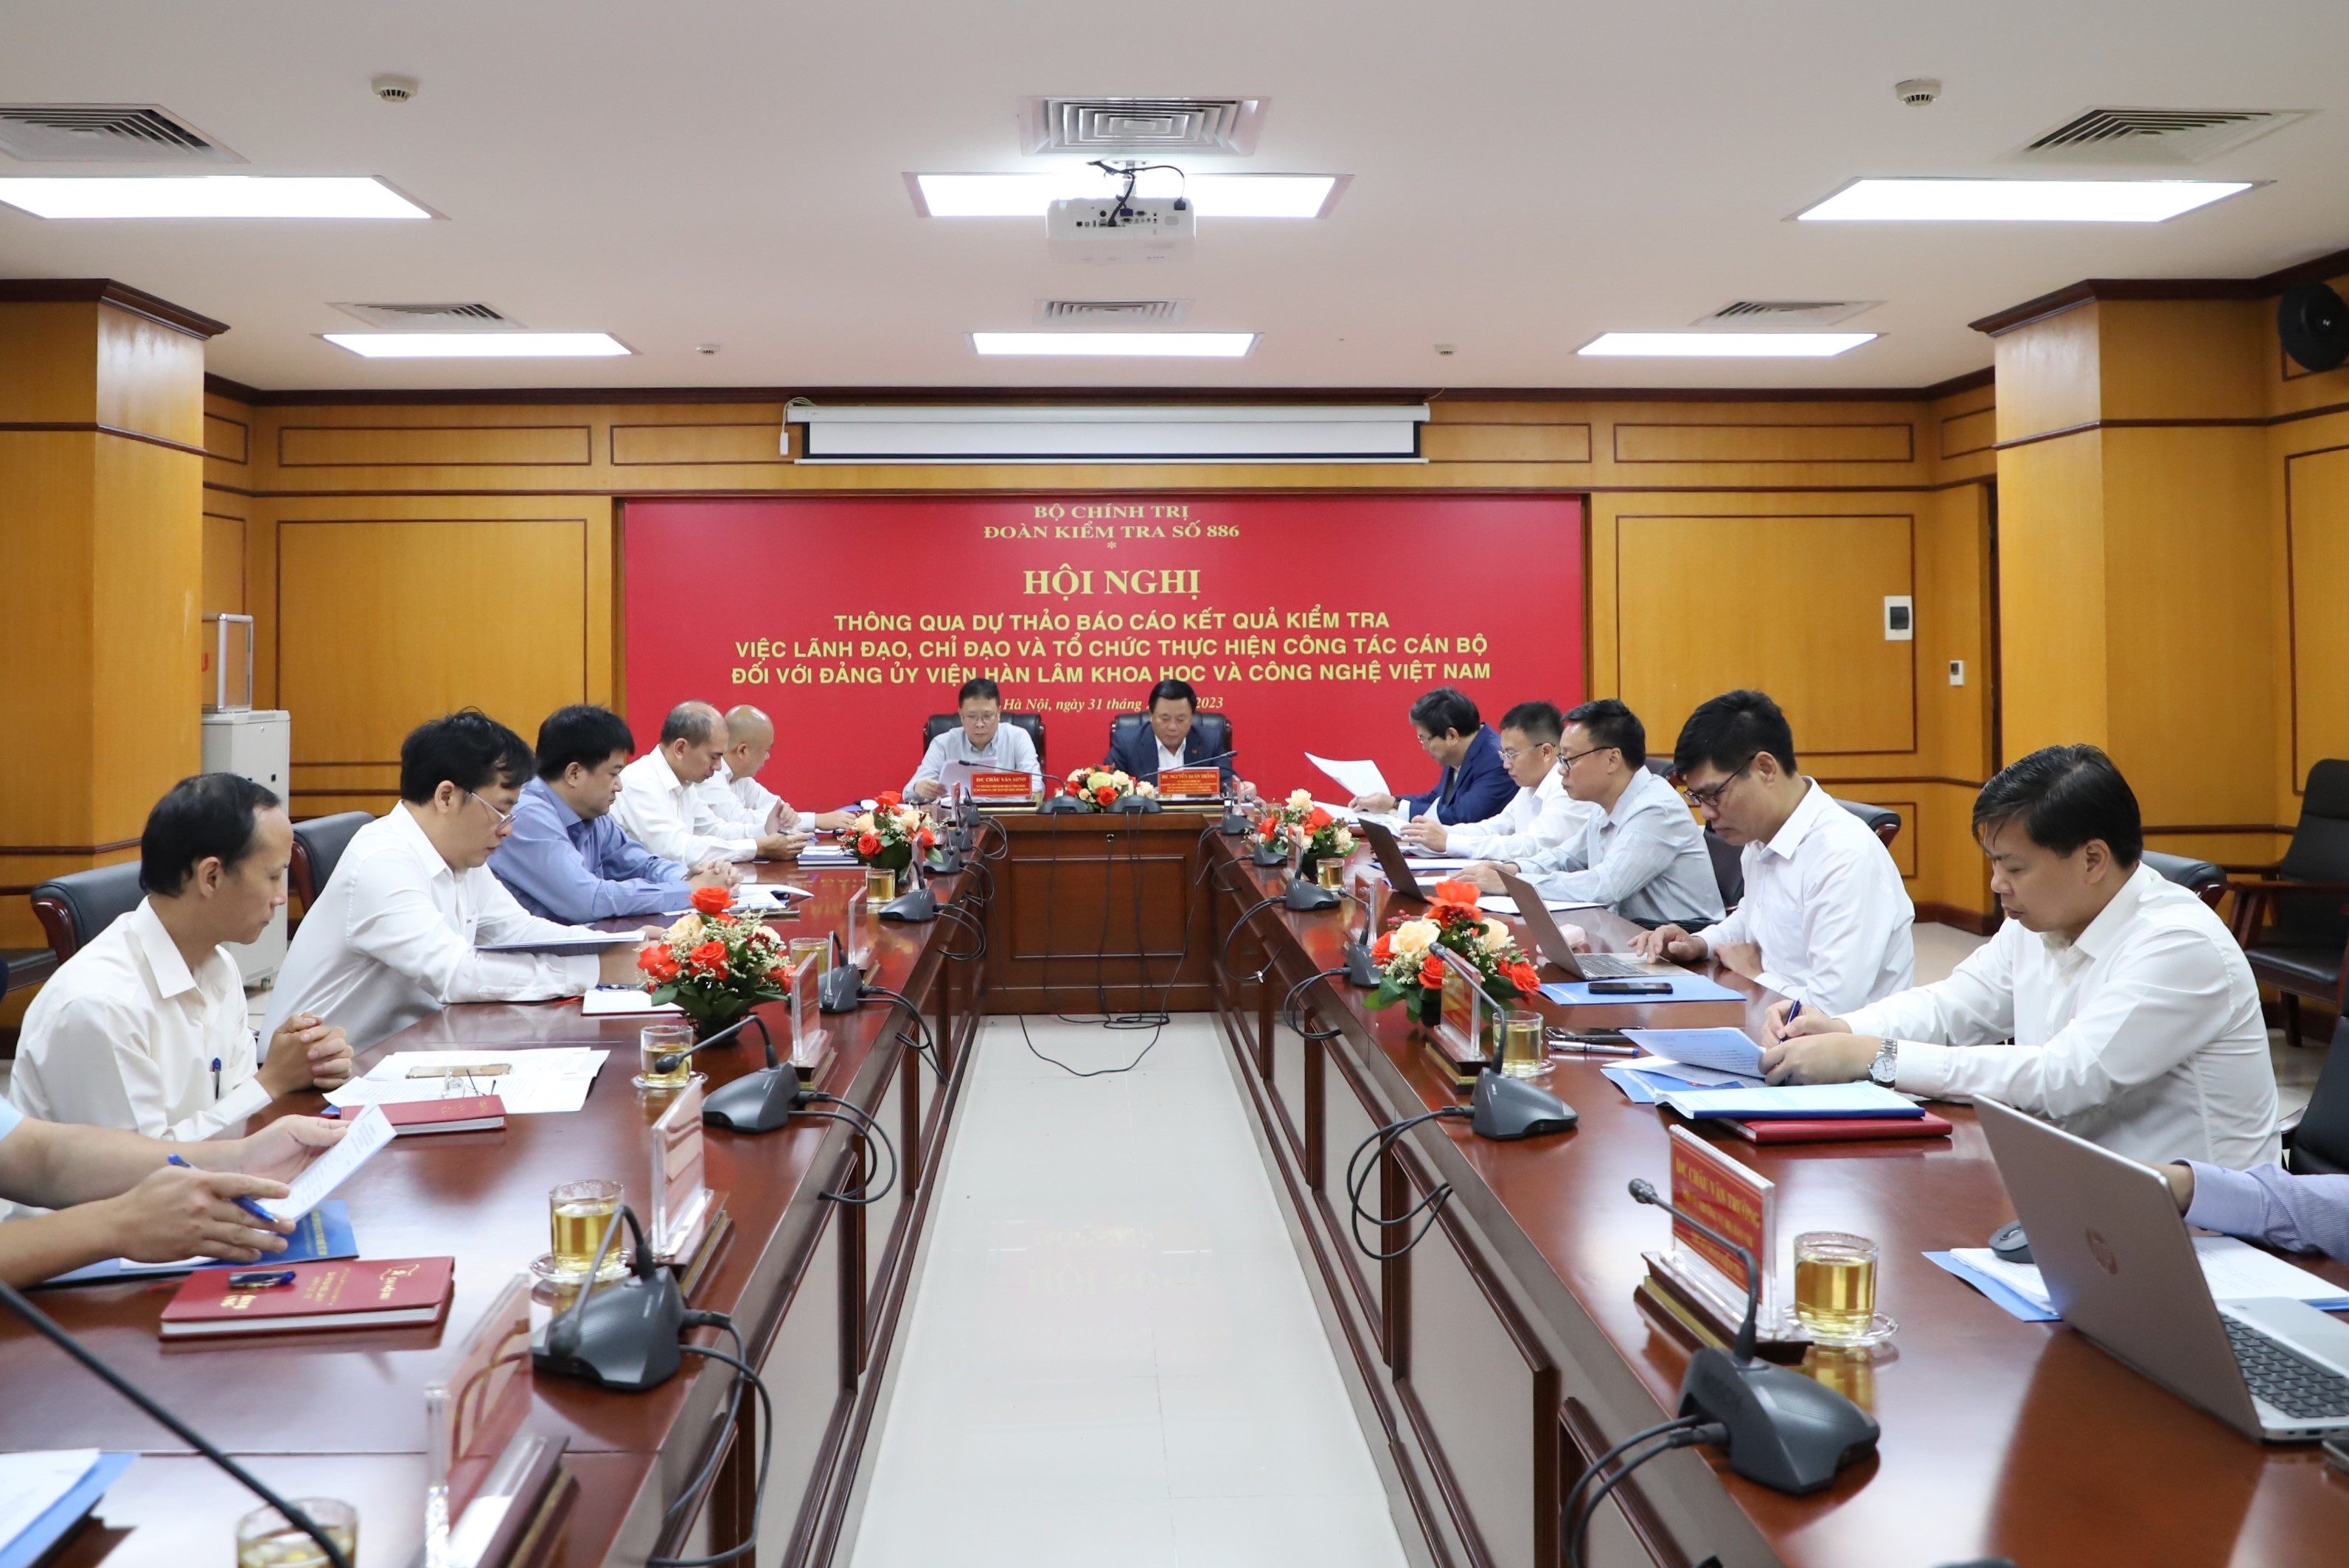 Hội nghị thông qua Báo cáo kết quả kiểm tra việc lãnh đạo, chỉ đạo và tổ chức thực hiện công tác cán bộ đối với Đảng ủy Viện Hàn lâm Khoa học và Công nghệ Việt Nam